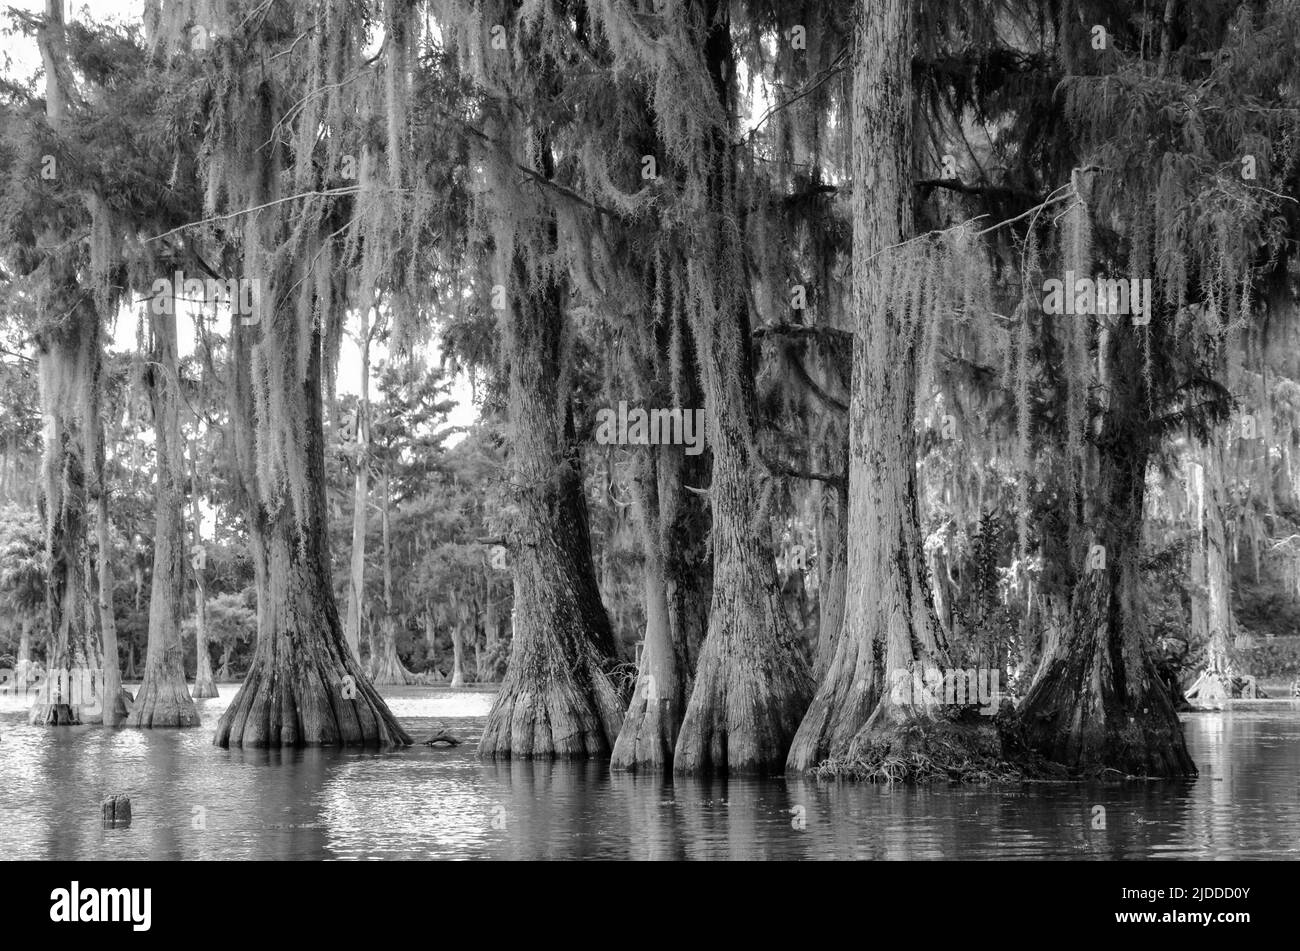 Ein künstlerisches s/w-Foto von Zypressen, die in spanisches Moos gehüllt sind, am Merritt's Mill Pond, Marianna, Florida, USA Stockfoto